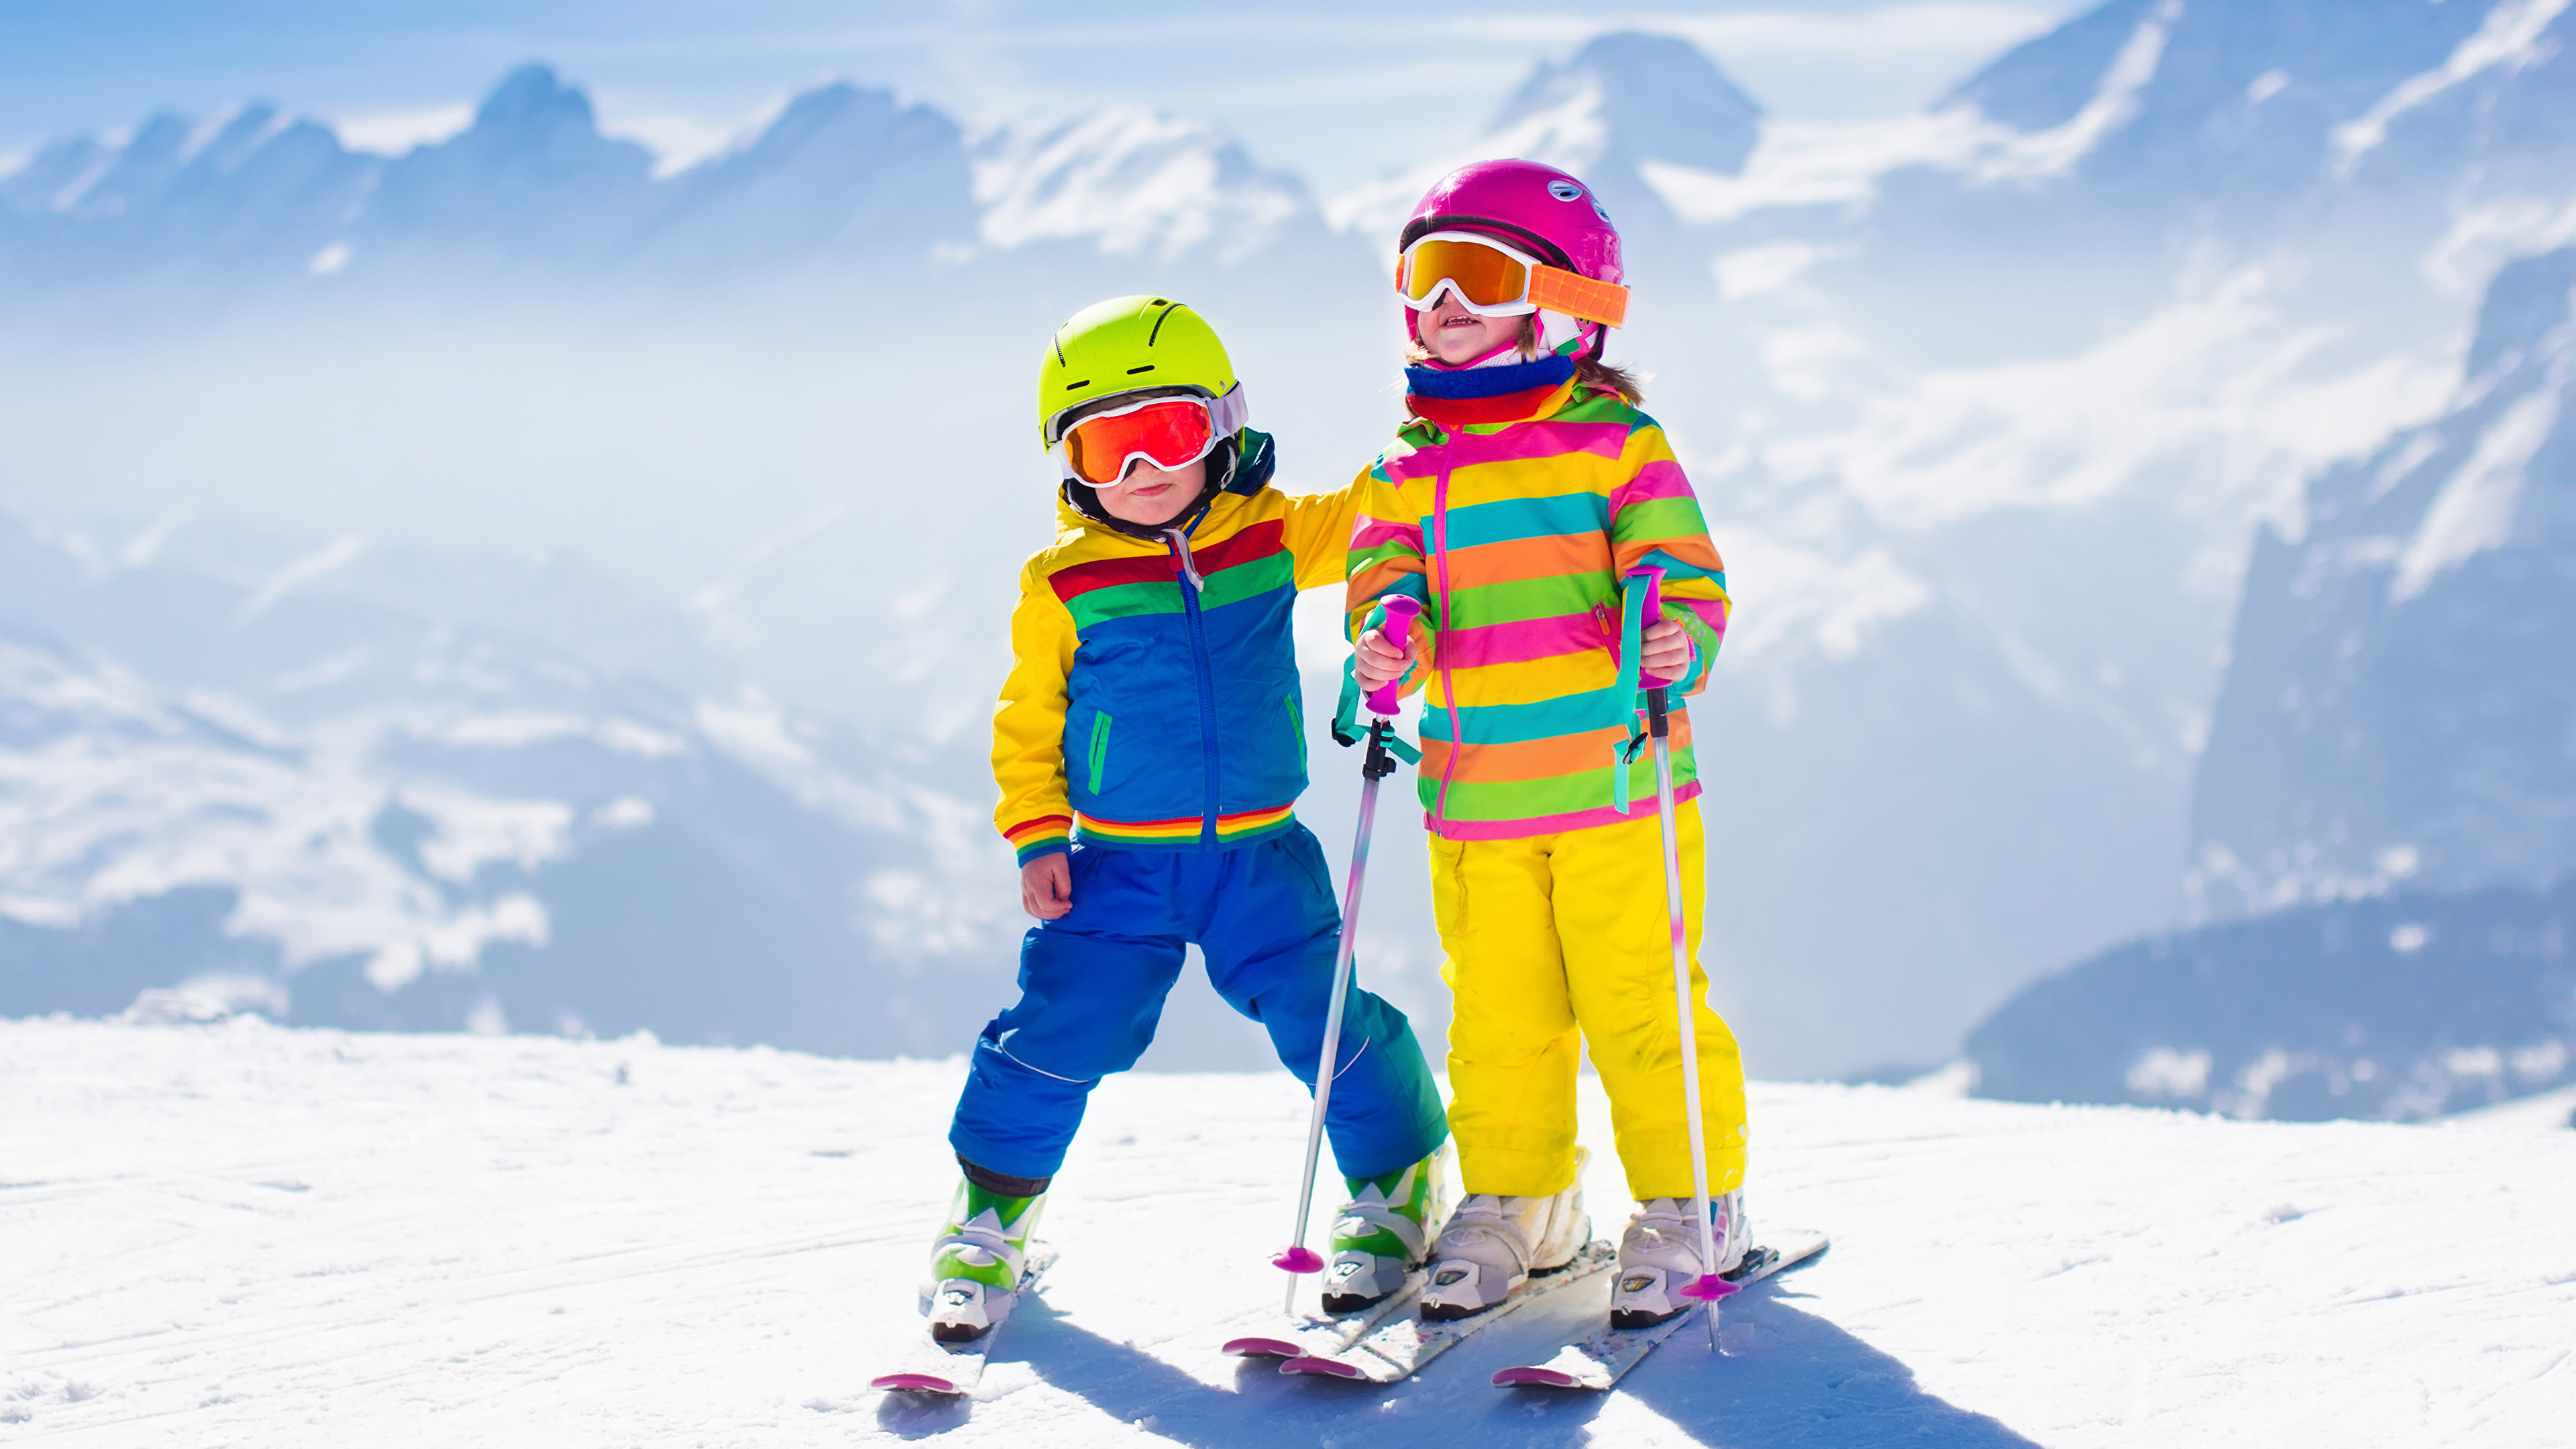 Fondos de Pantalla 3840x2160 Invierno Tabla de esquí Nieve Dos